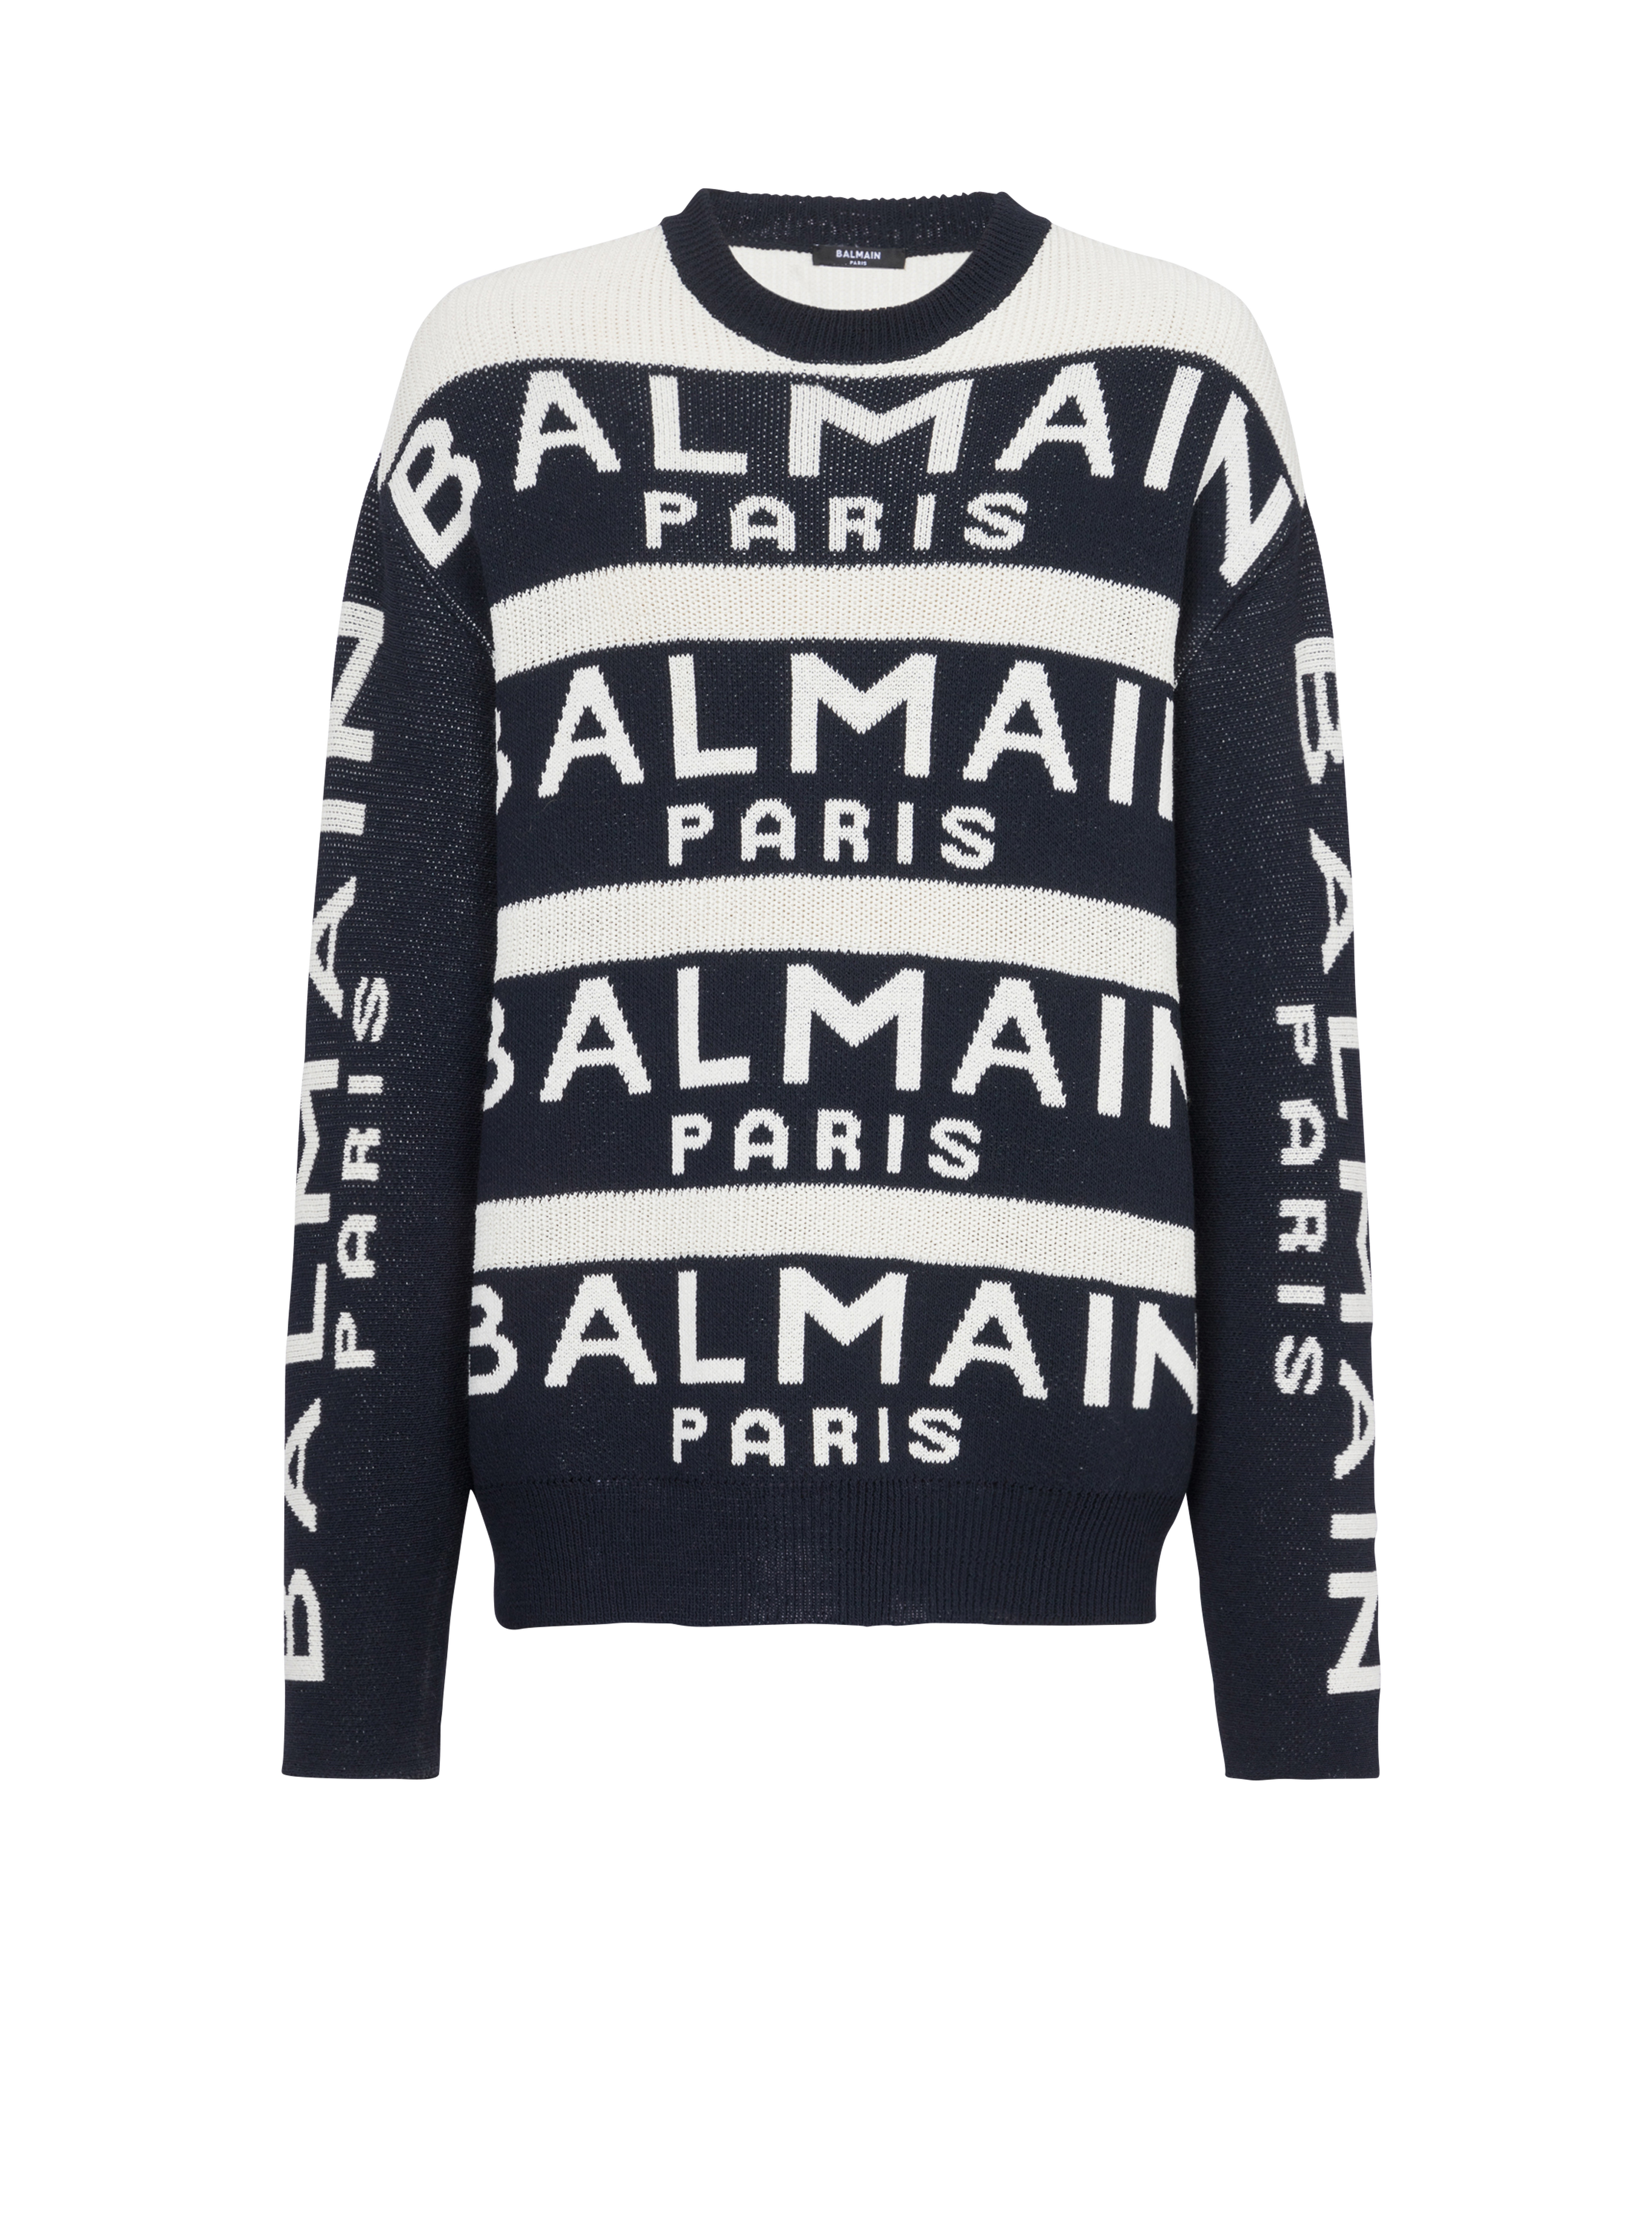 Balmain Paris 로고 자수 디테일 스웨터, 검정색